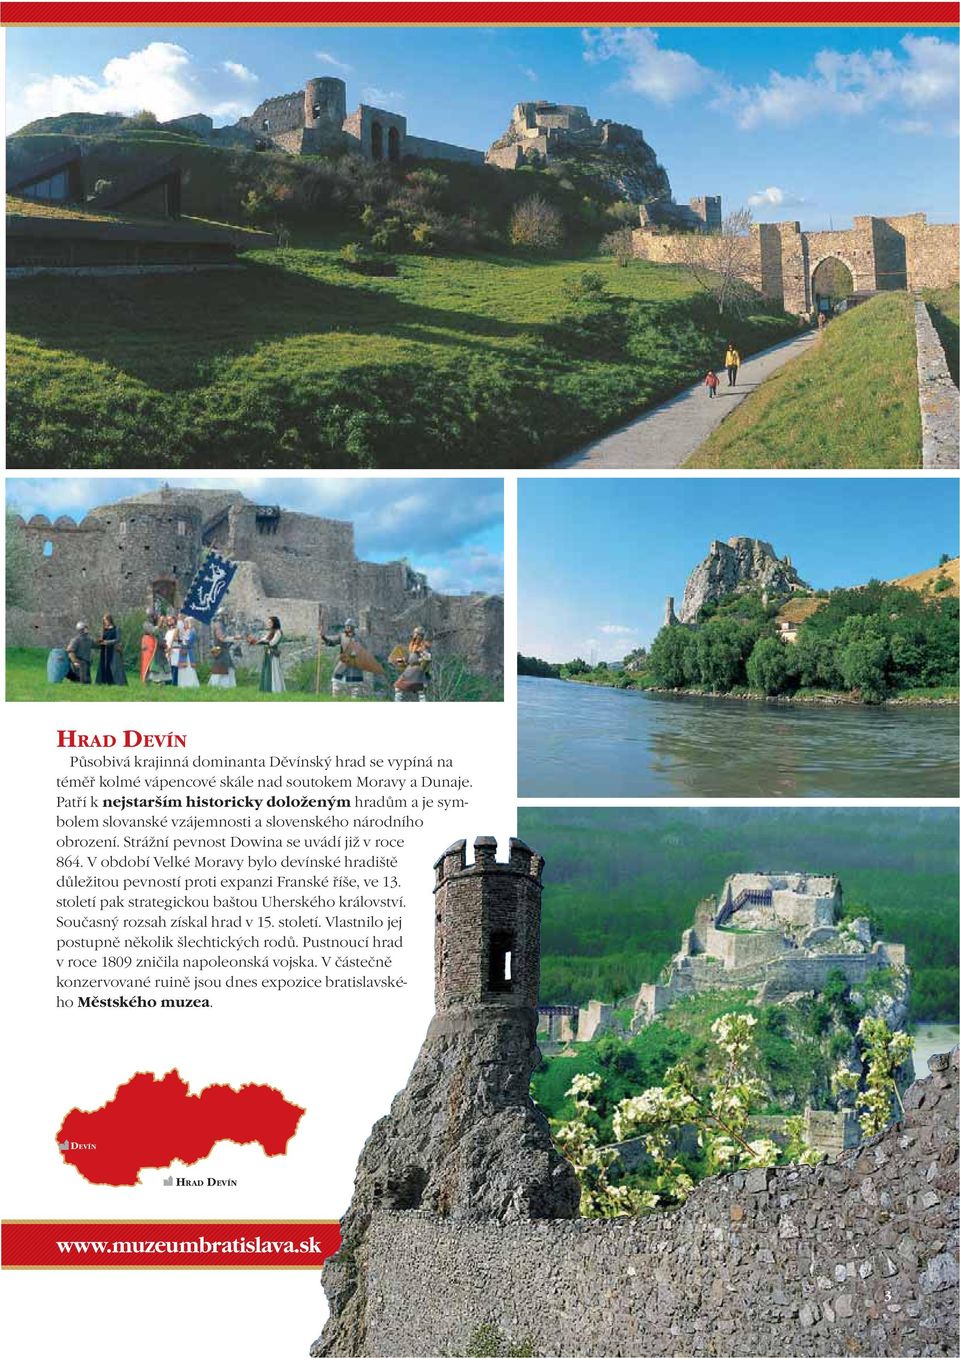 V období Velké Moravy bylo devínské hradiště důležitou pevností proti expanzi Franské říše, ve 13. století pak strategickou baštou Uherského království.